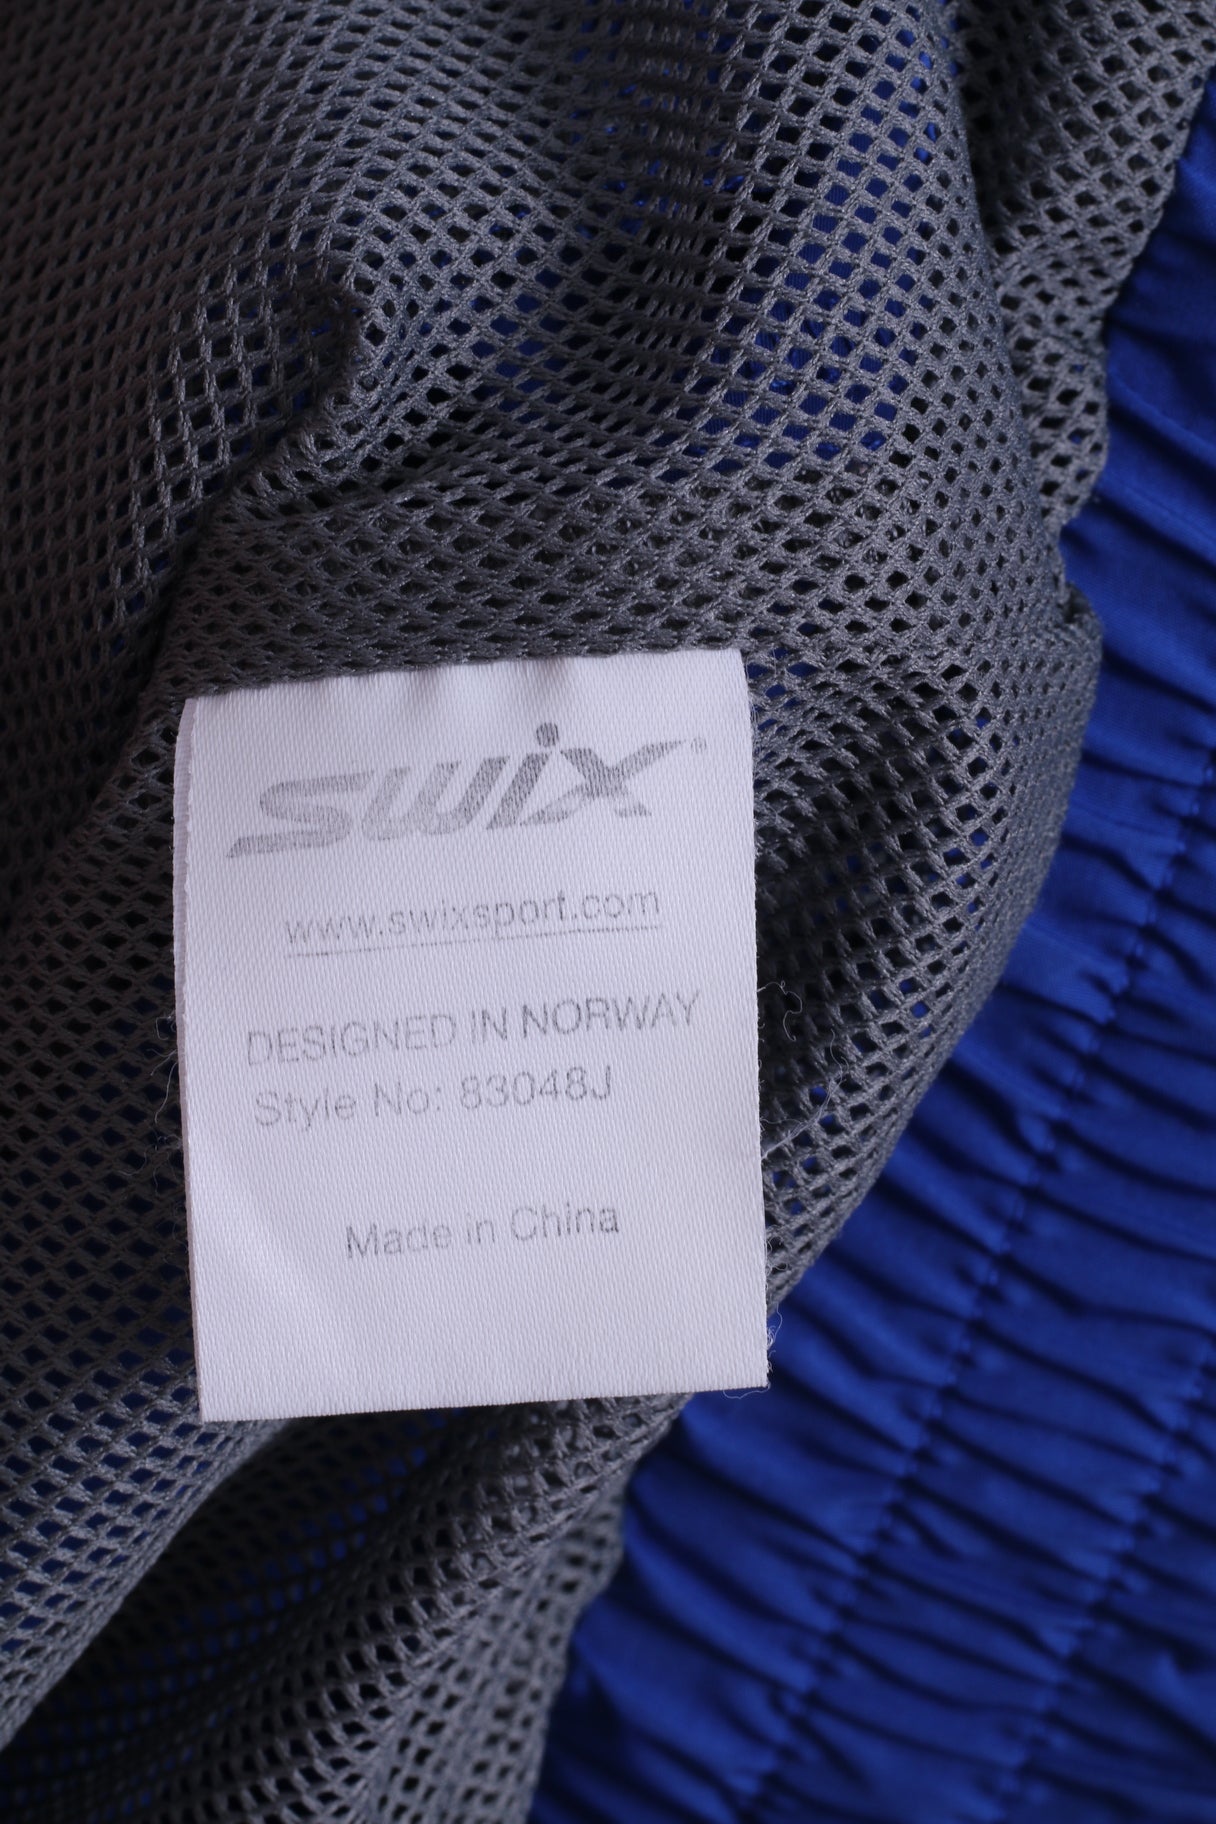 SWIX Womens 14 XL Track Top Jacket Full Zipper Sport Blue